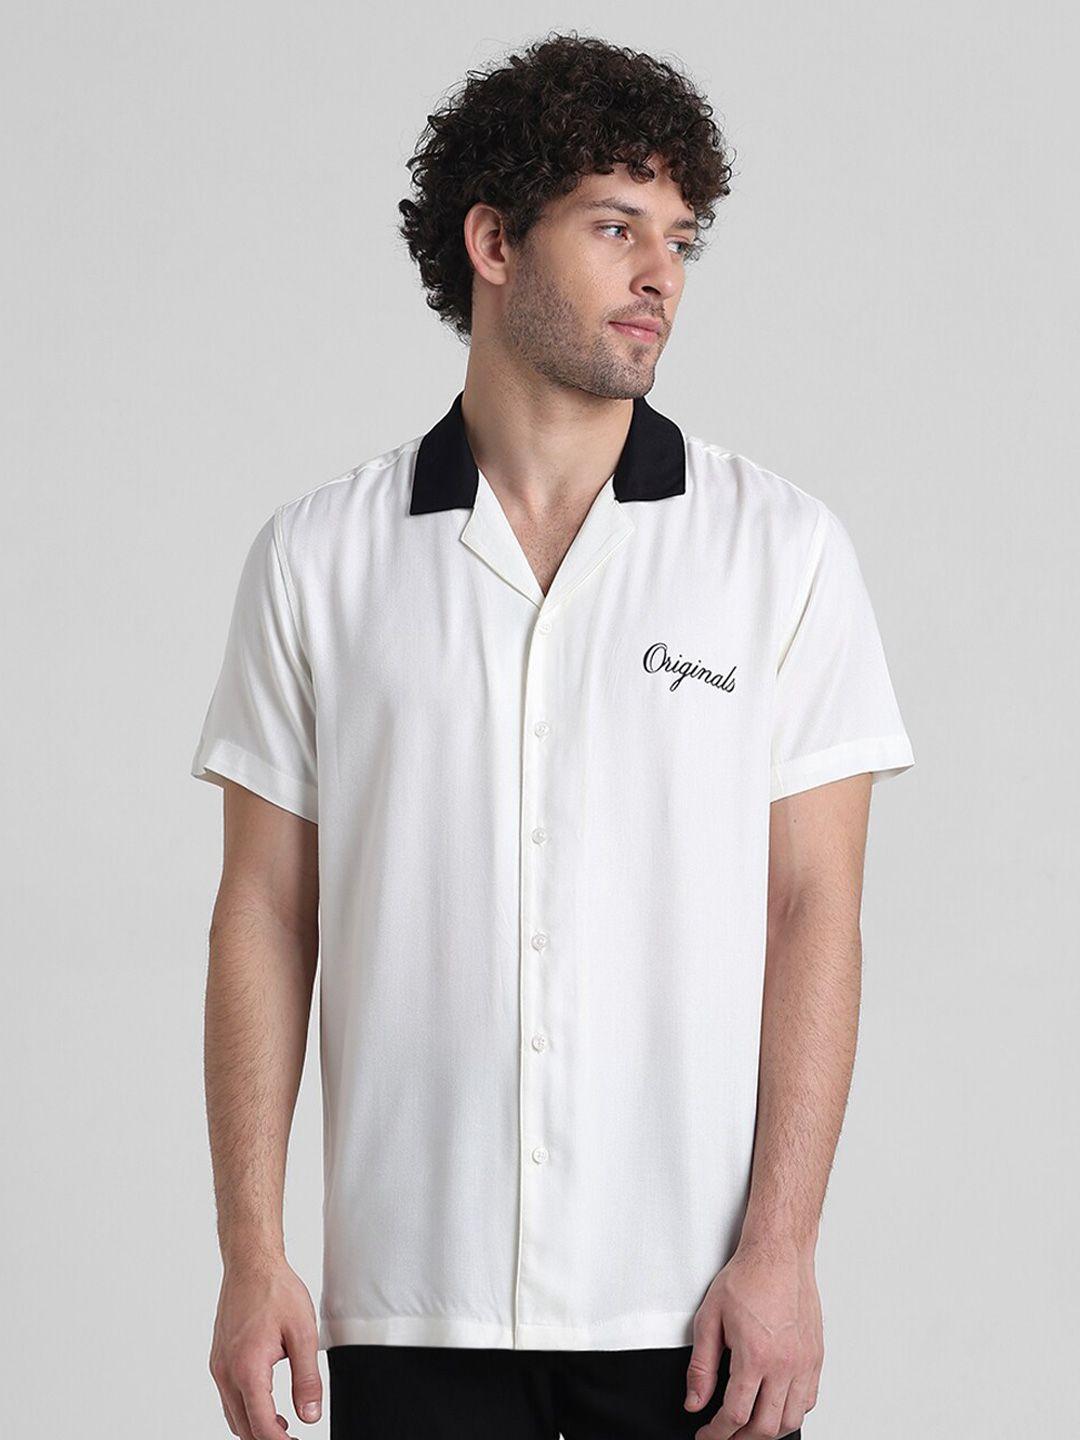 jack & jones typography printed cuban collar casual shirt